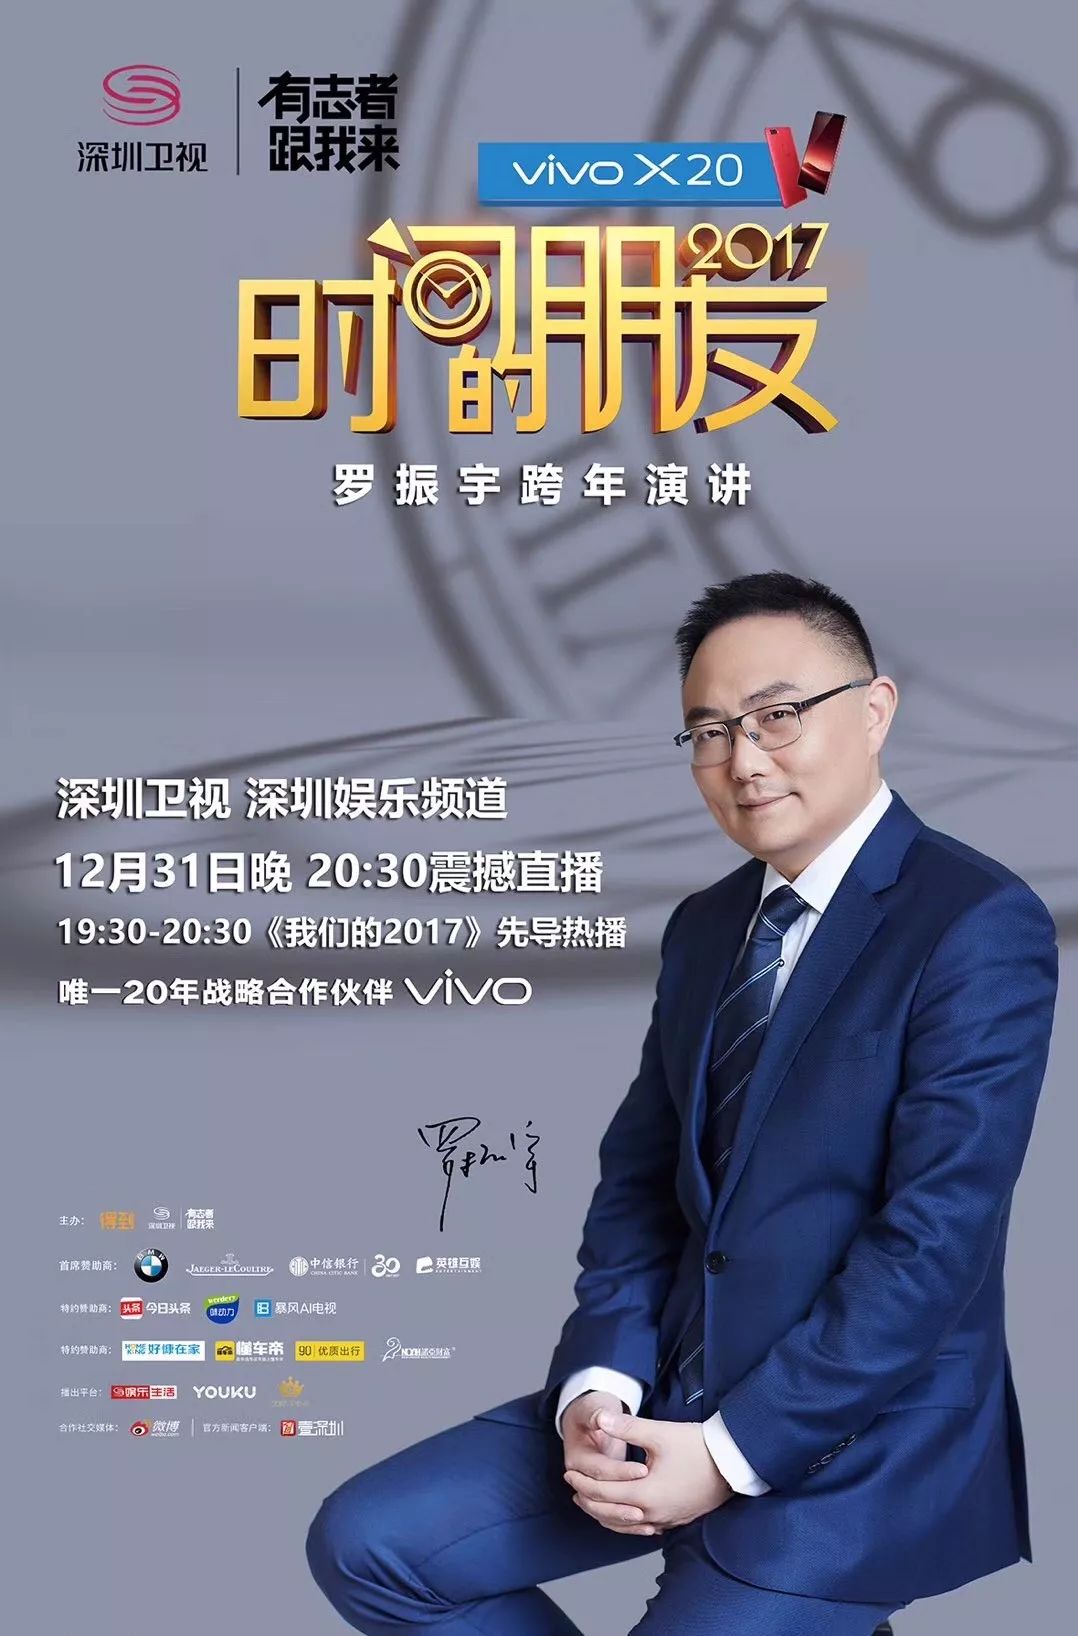 深圳卫视广告2014图片